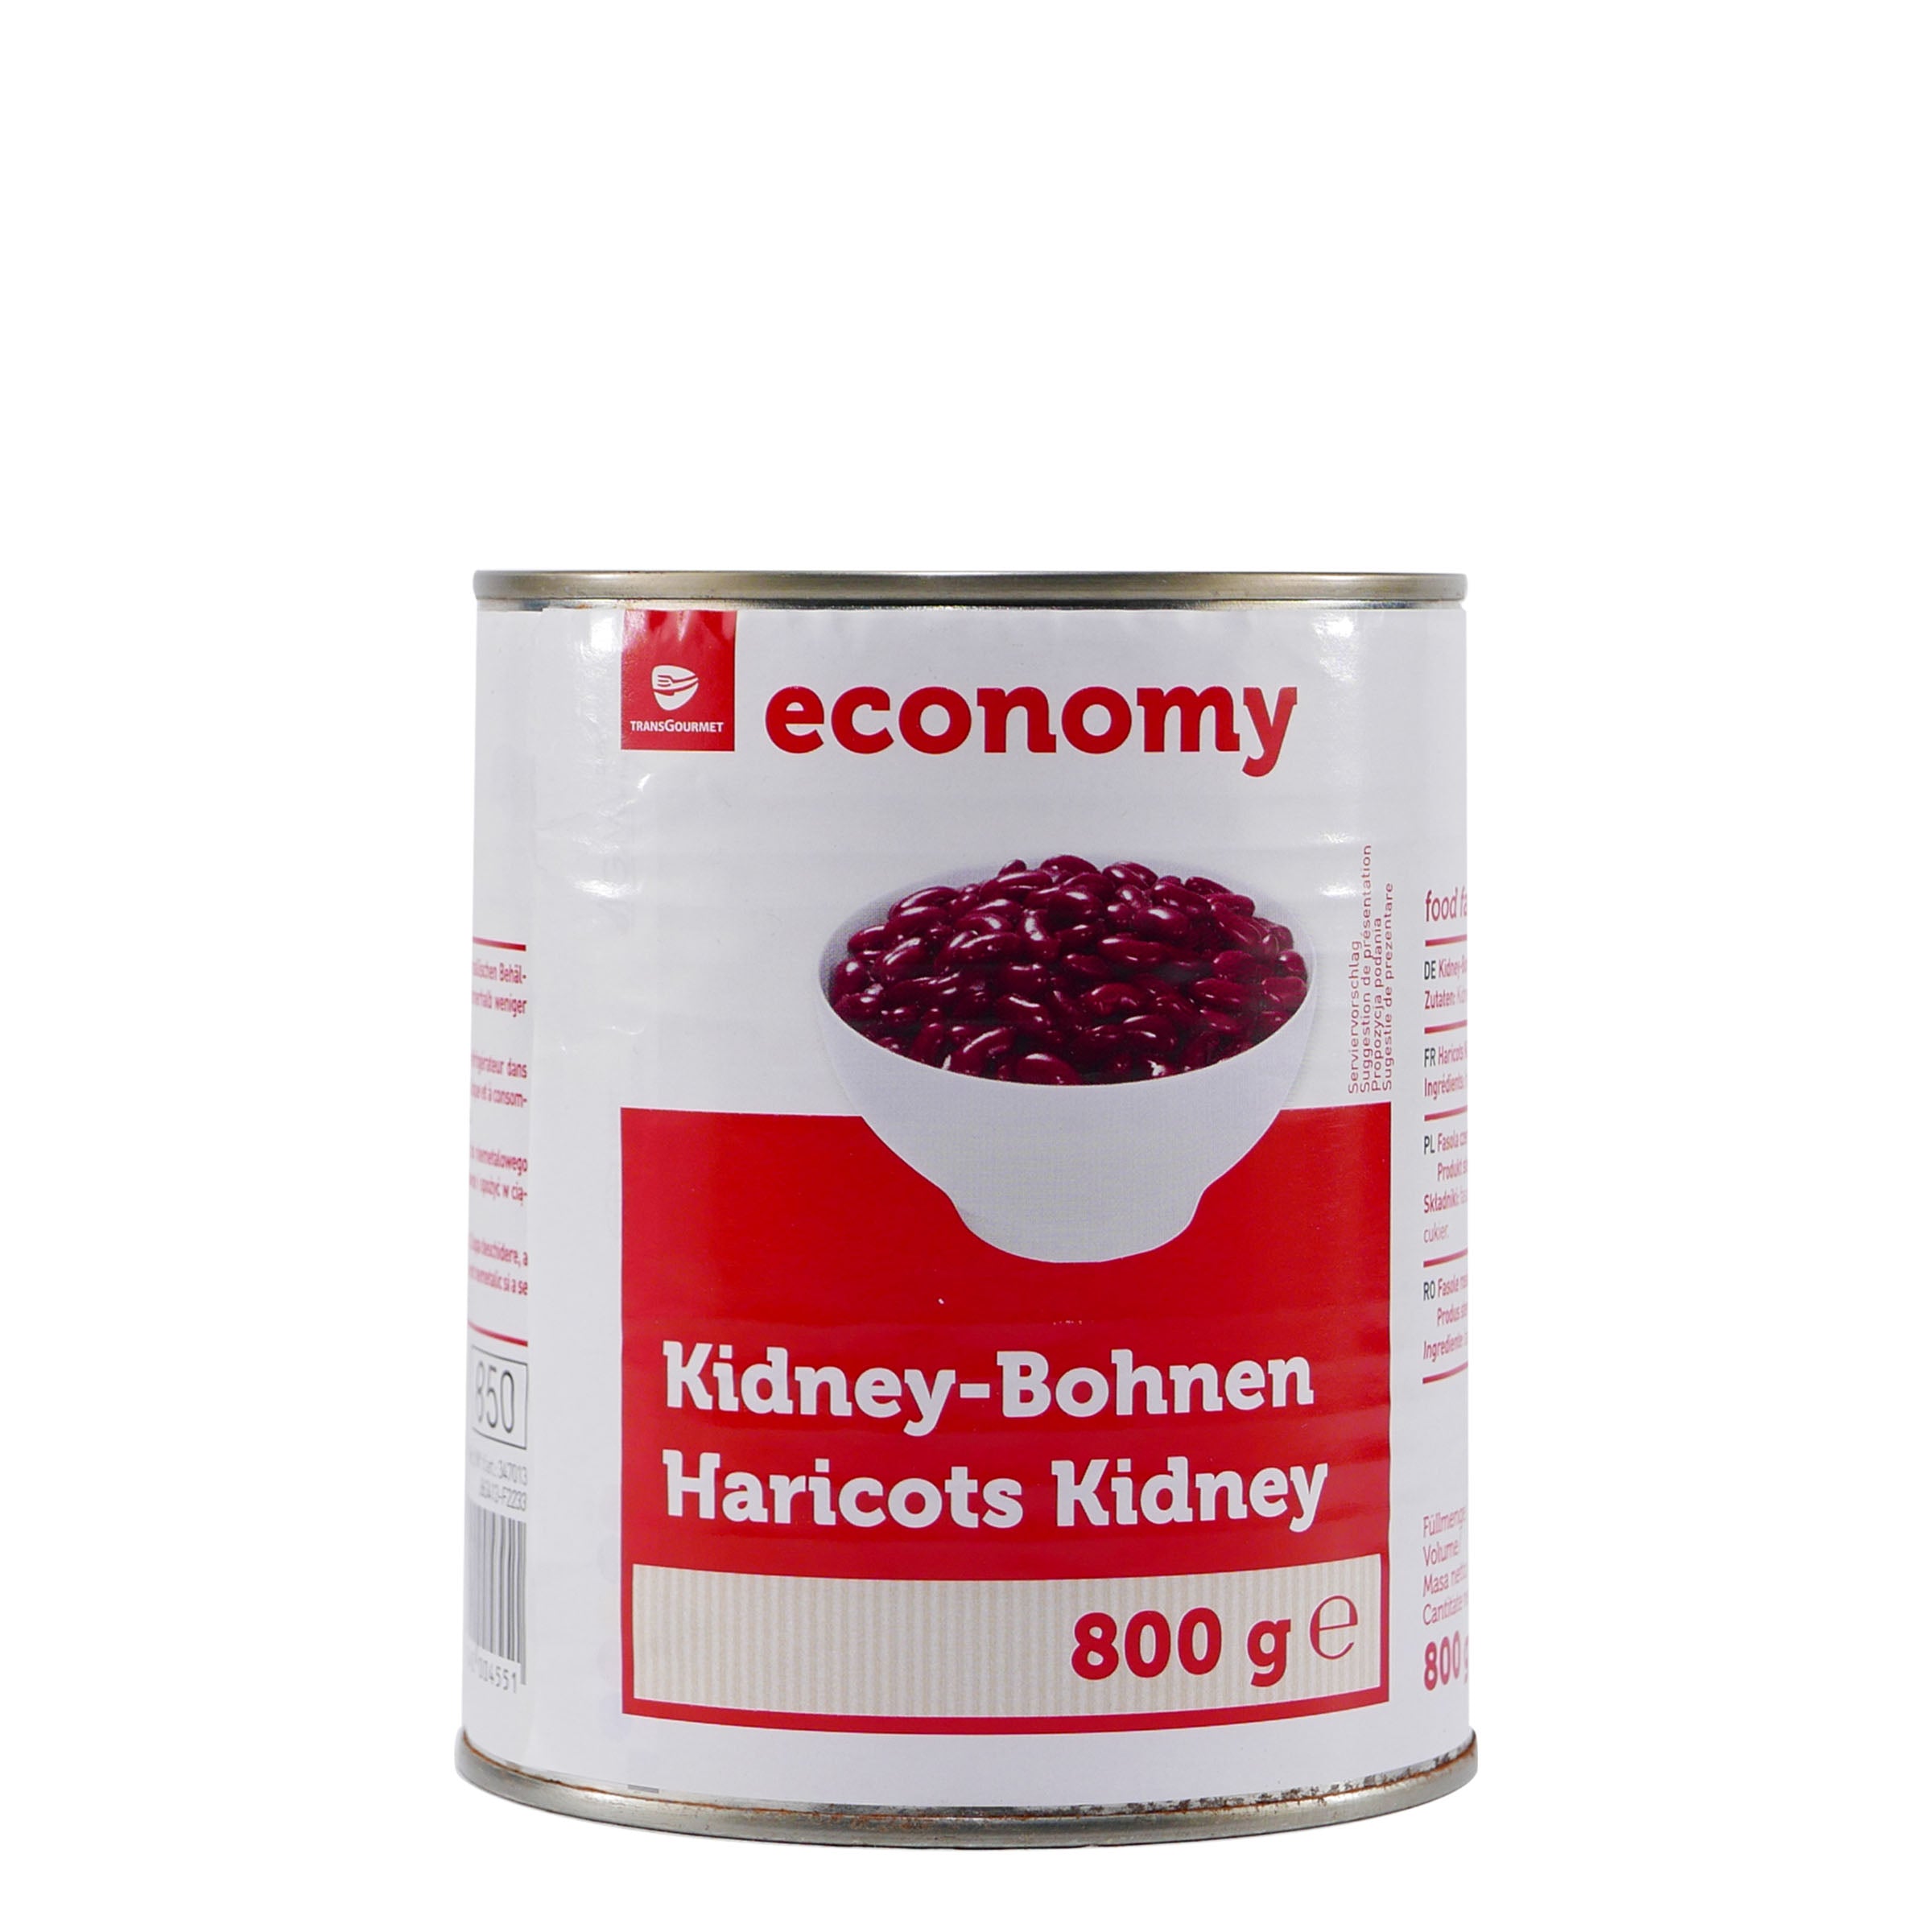 Trans Gourmet Kidney-Bohnen (6 x 800g)